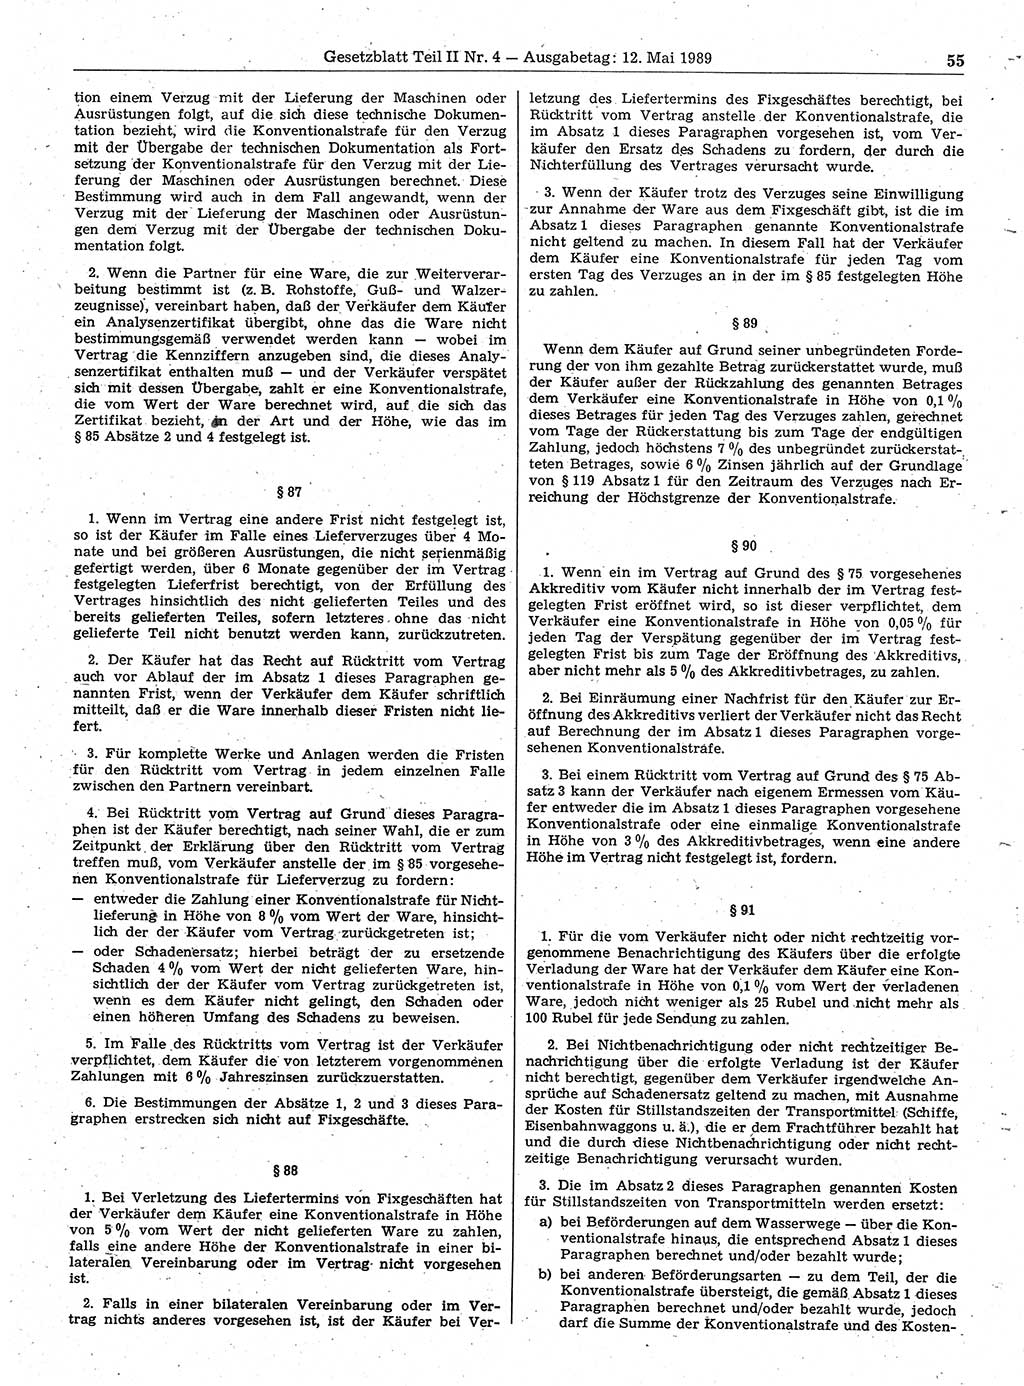 Gesetzblatt (GBl.) der Deutschen Demokratischen Republik (DDR) Teil ⅠⅠ 1989, Seite 55 (GBl. DDR ⅠⅠ 1989, S. 55)